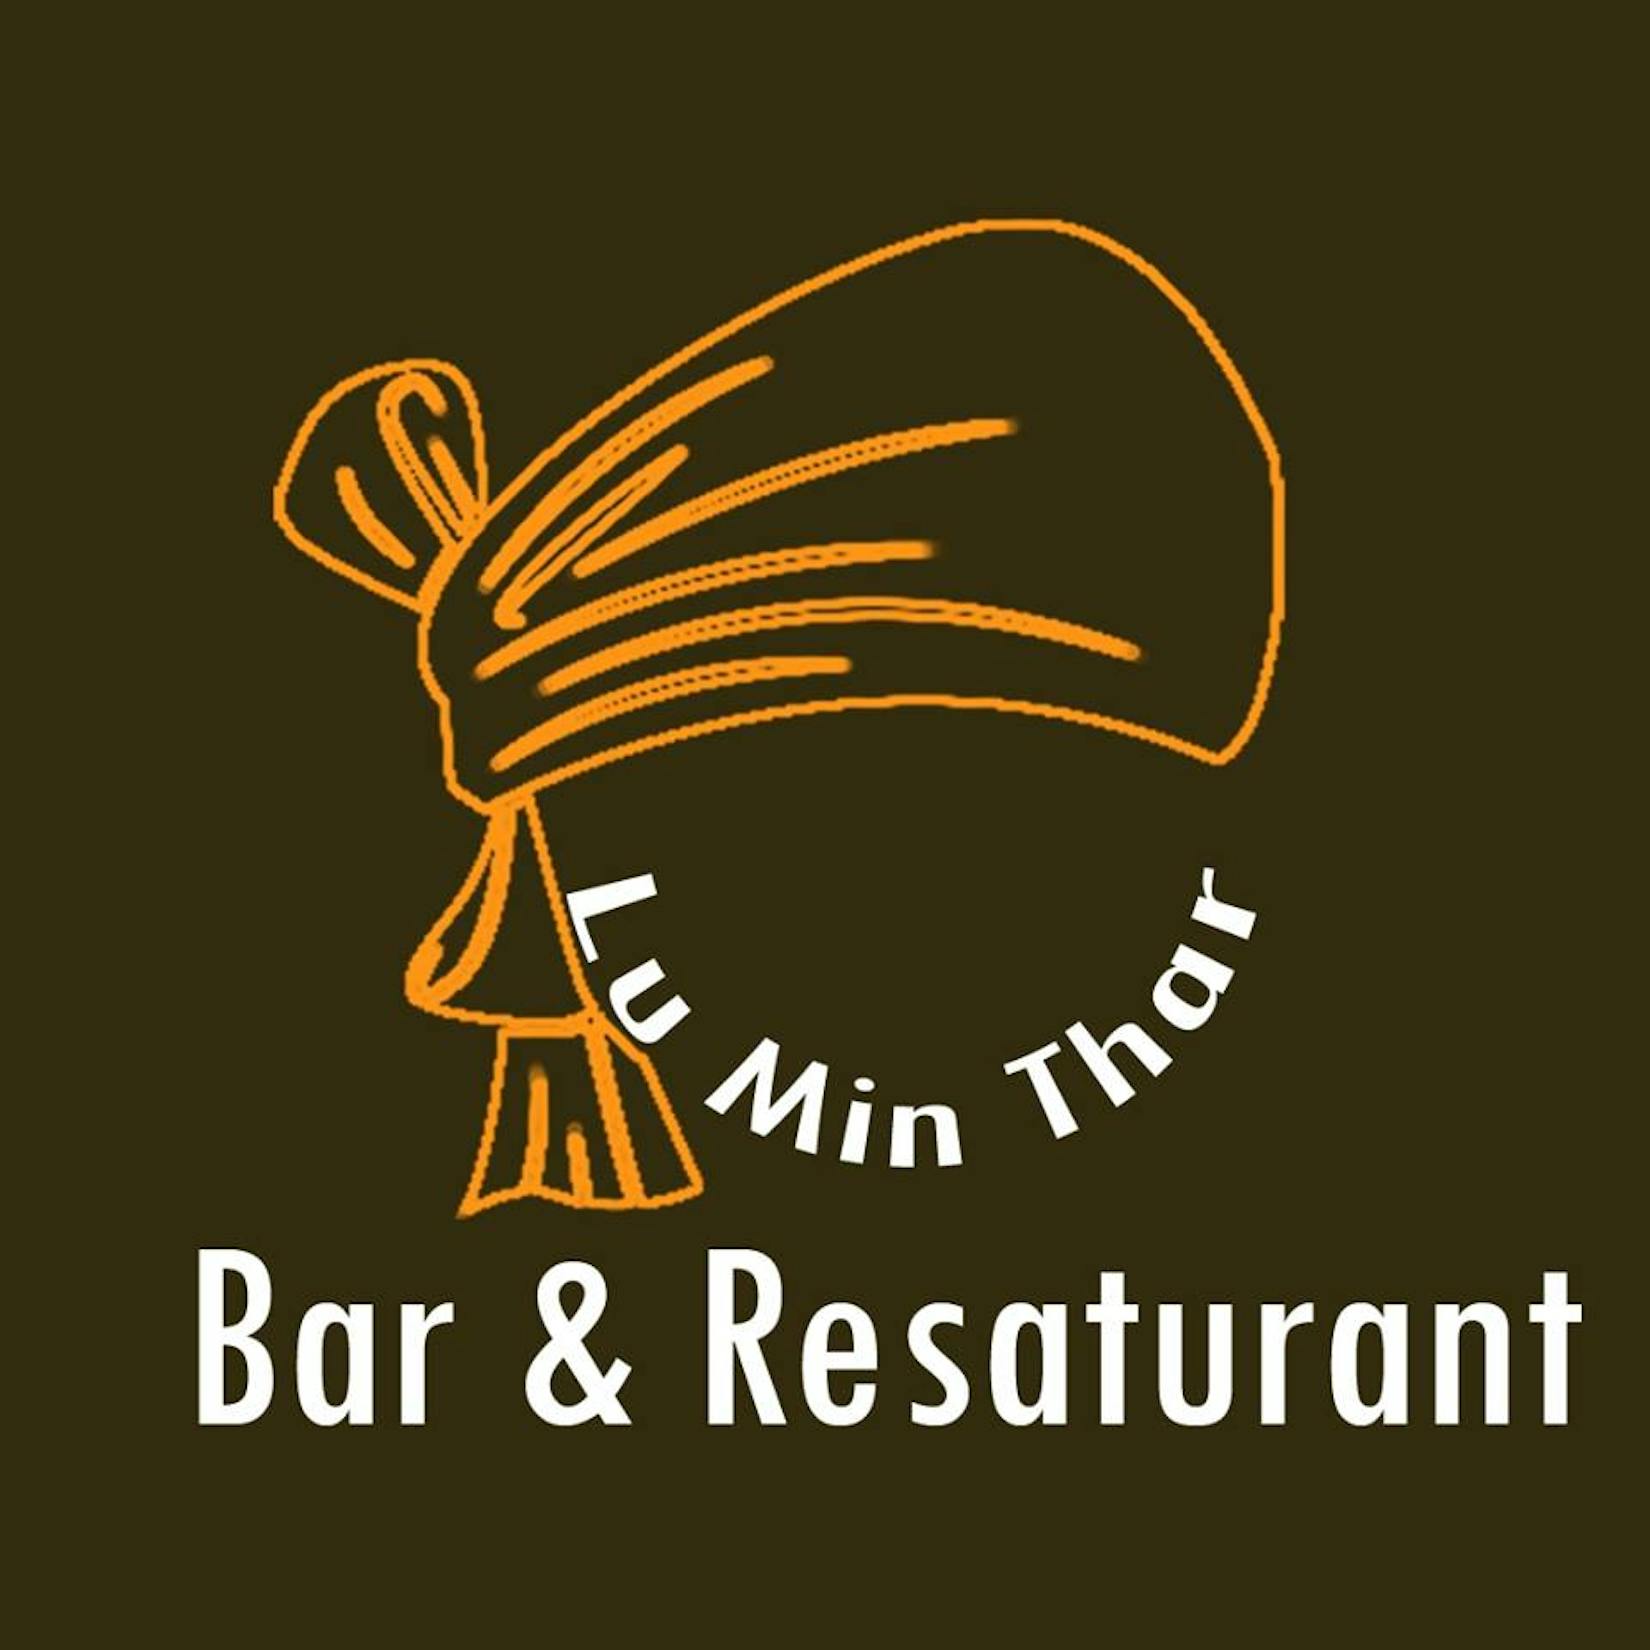 Lumin Thar Bar& Restaurant | yathar